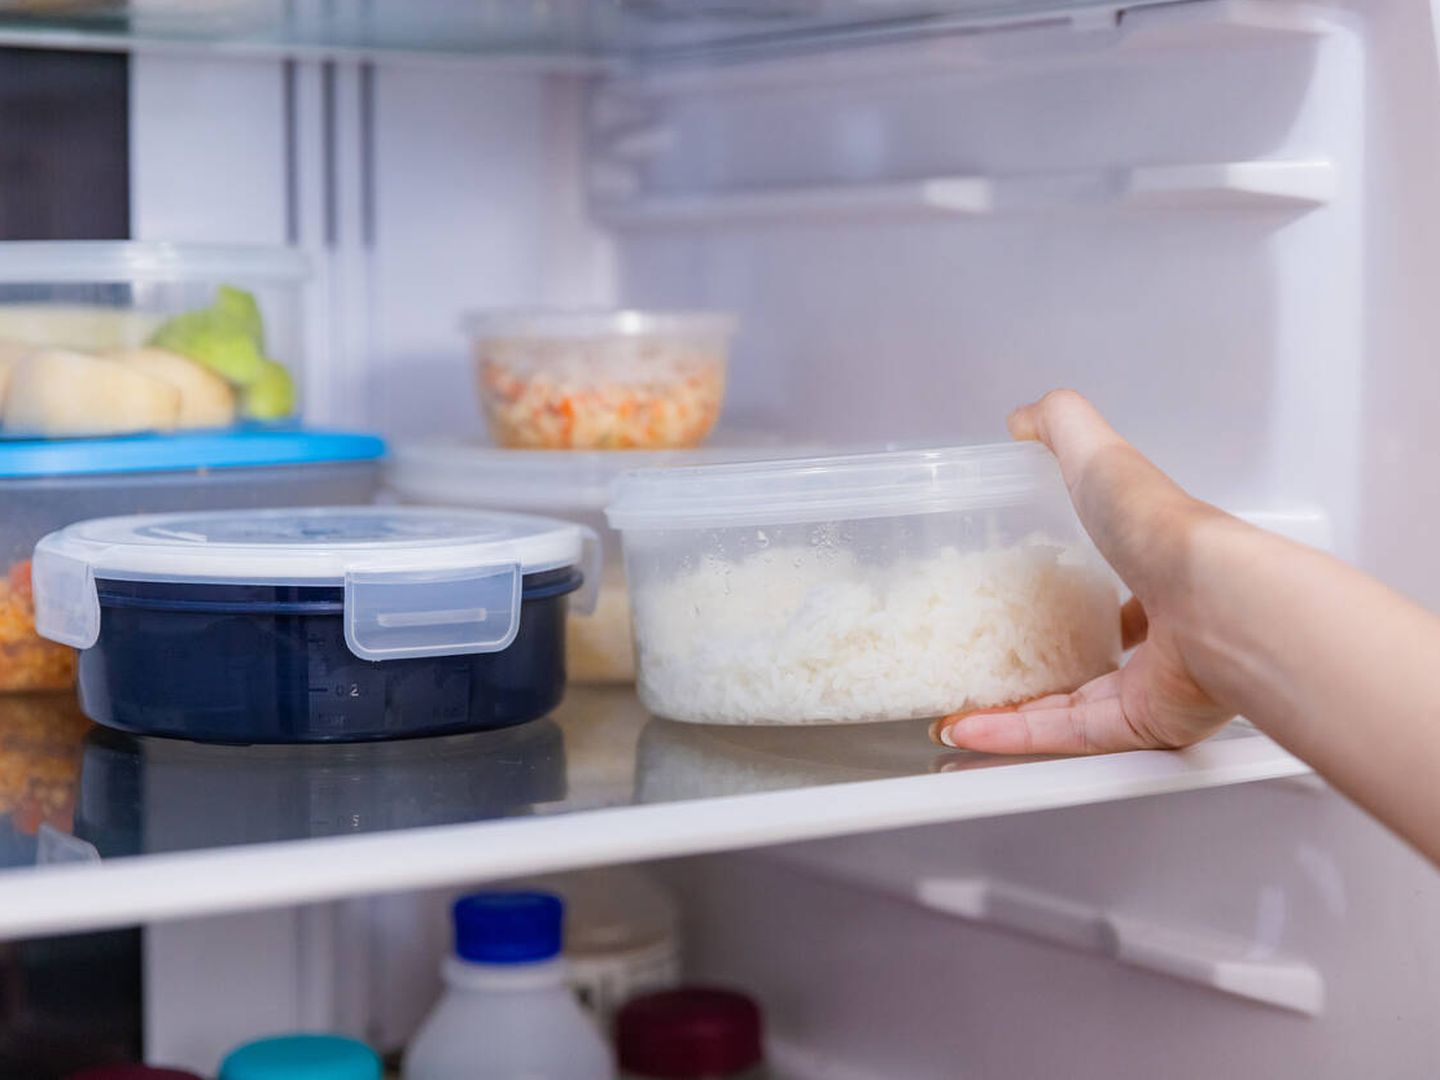 El arroz y la pasta no refrigerados pueden suponer un riesgo para la salud. (iStock)